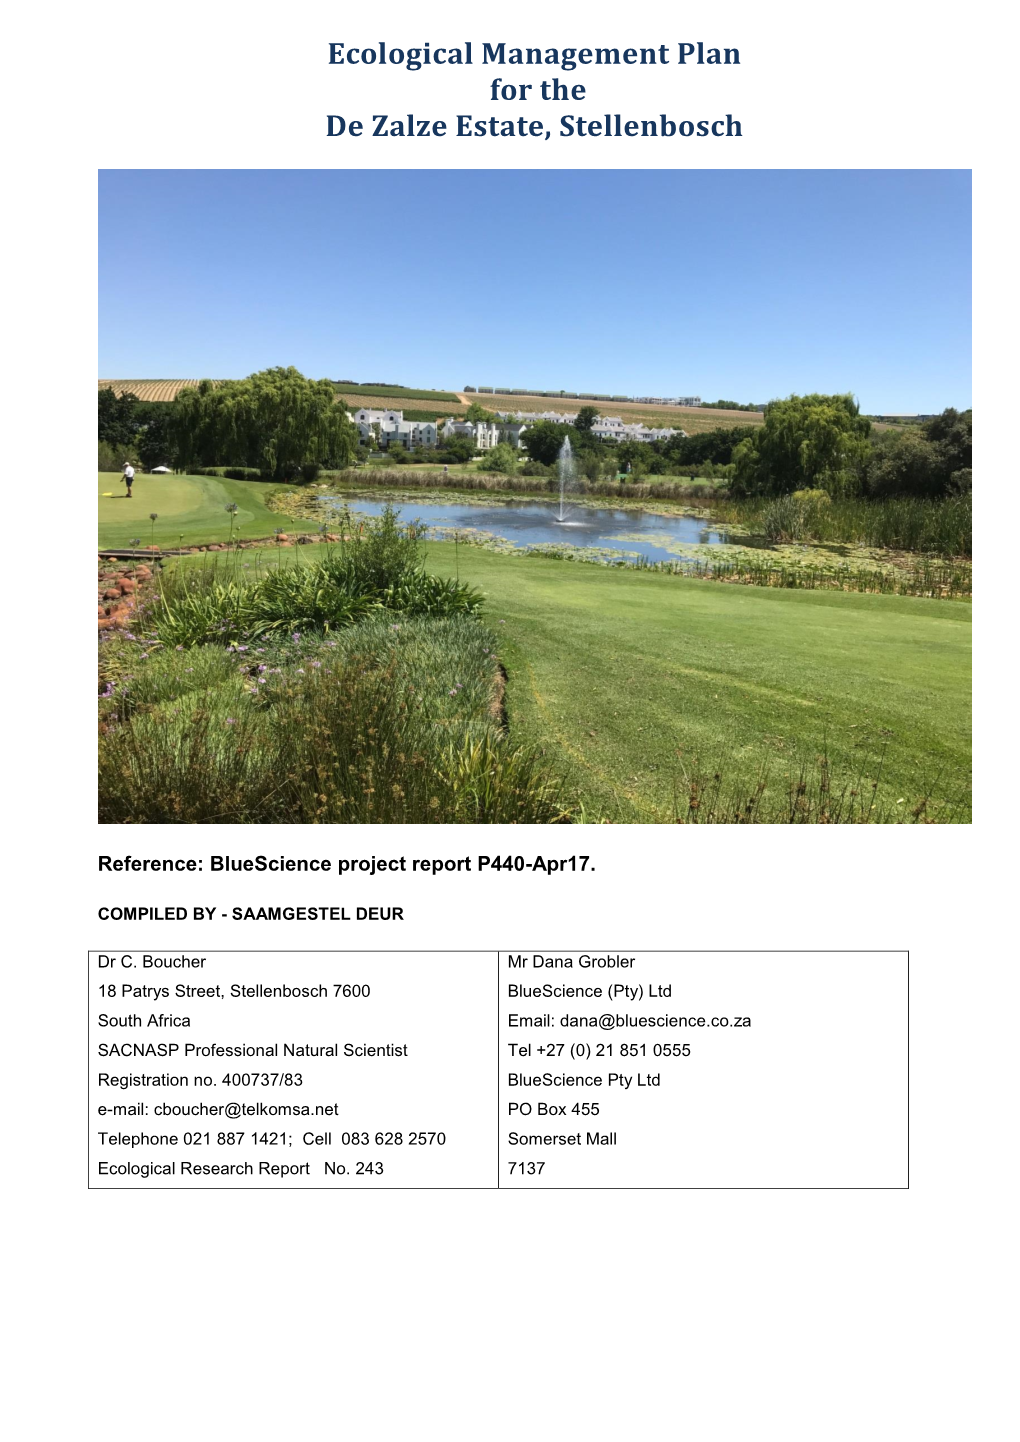 Ecological Management Plan for the De Zalze Estate, Stellenbosch